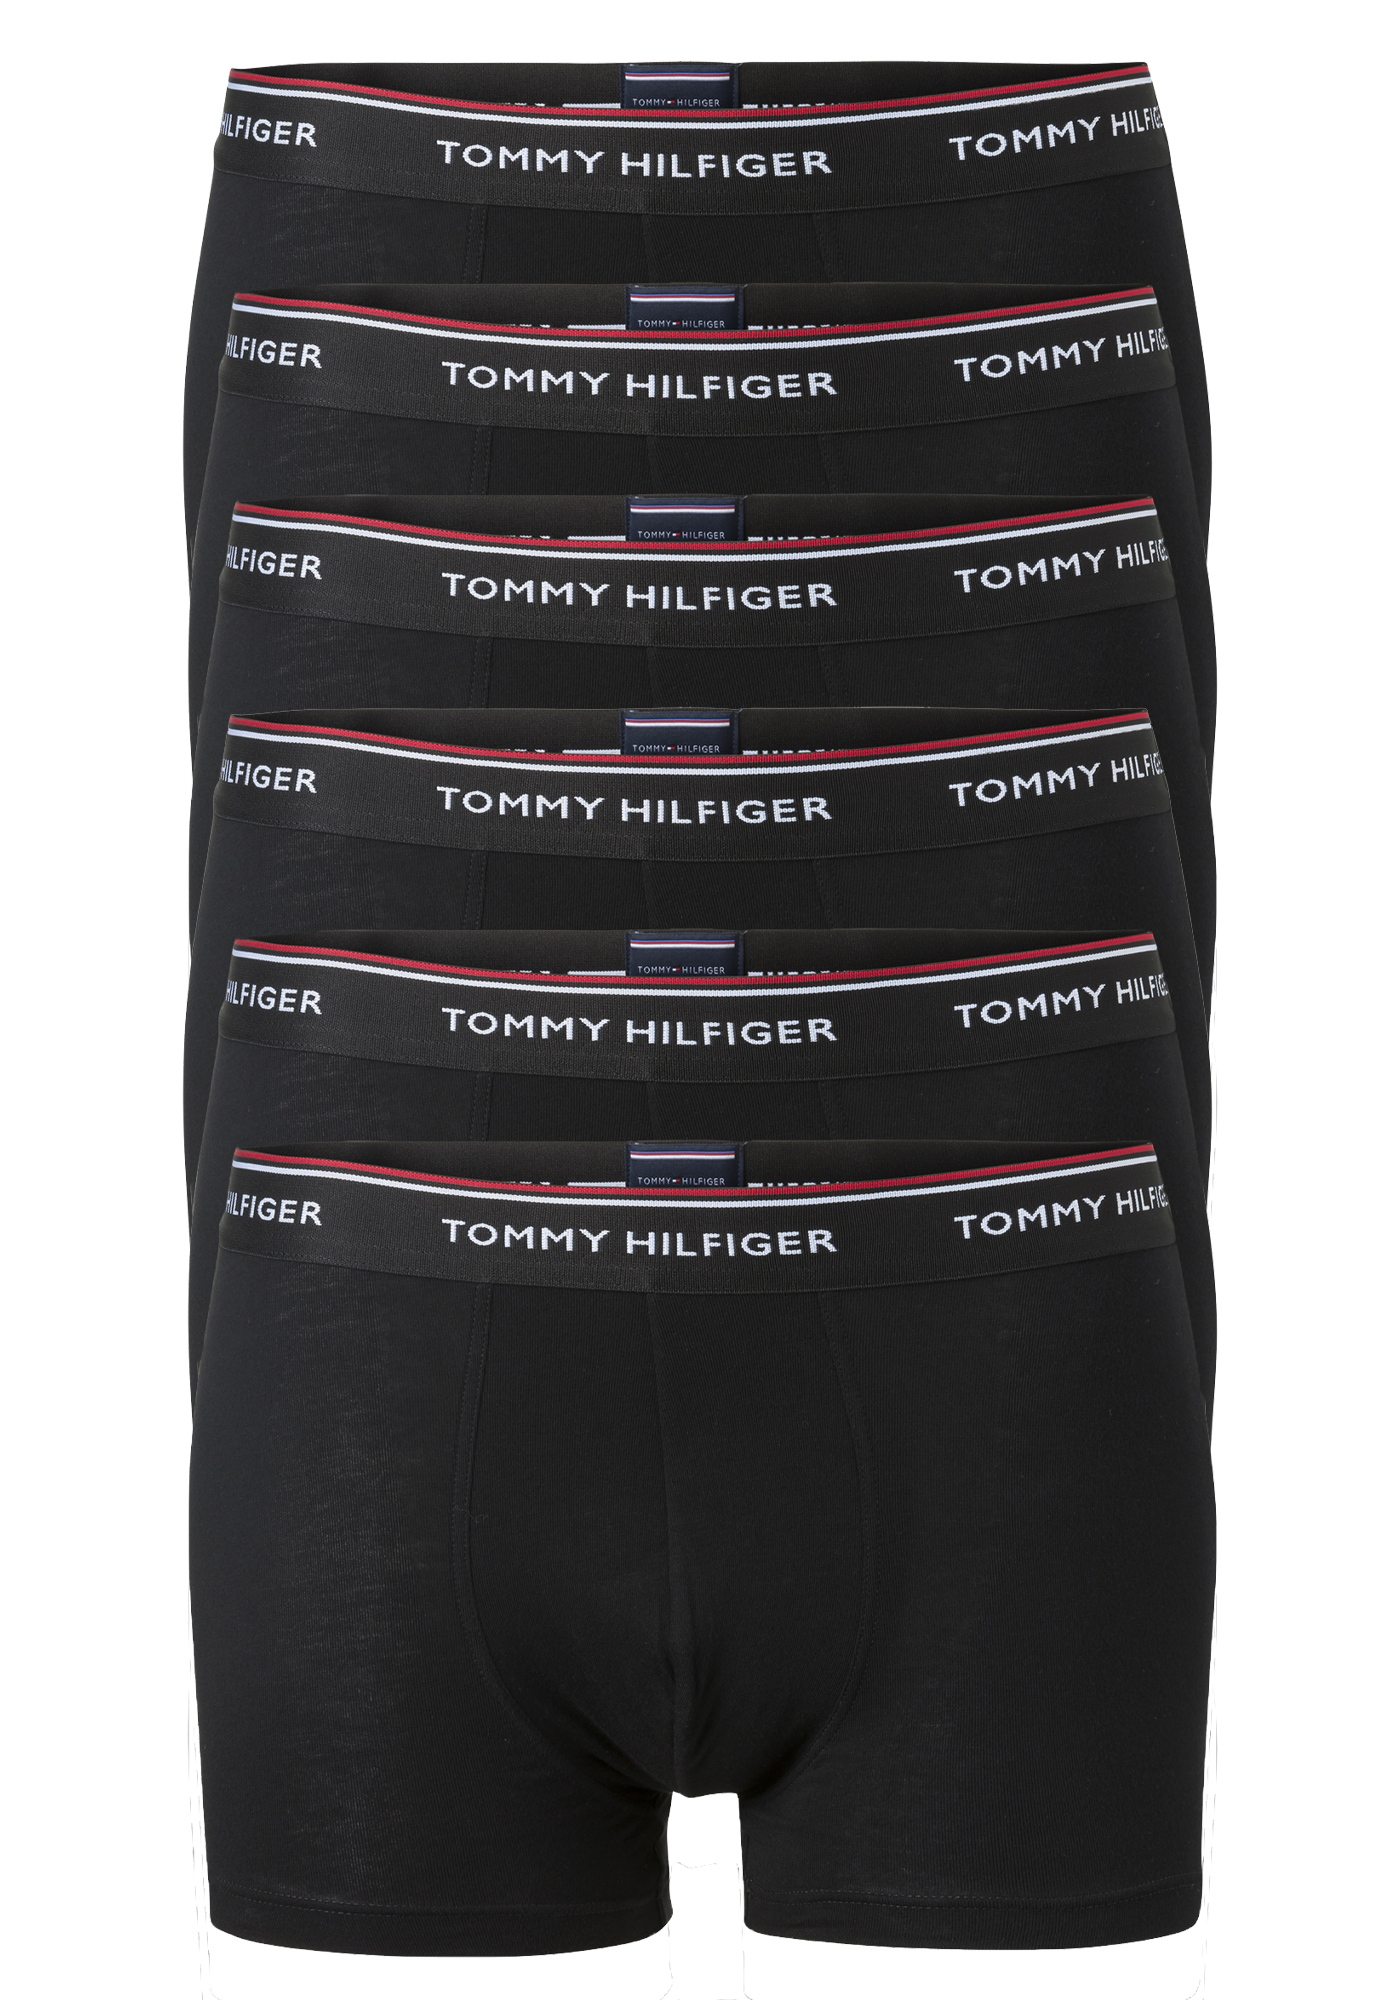 Bedreven Ordelijk Droogte Tommy Hilfiger trunks (2x 3-pack), heren boxers normale lengte, zwart -  Shop de nieuwste voorjaarsmode